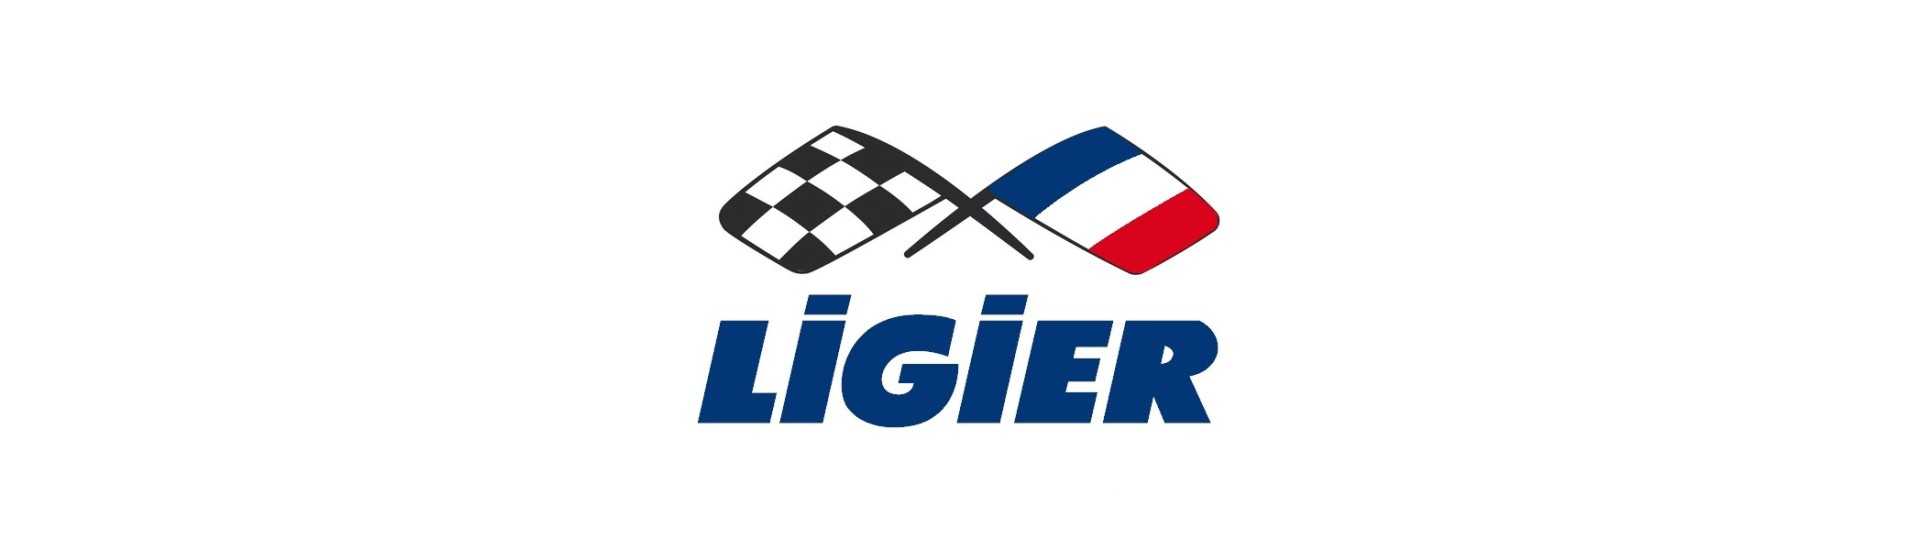 Triangle vor dem besten Preis für Auto ohne Lizenz Ligier